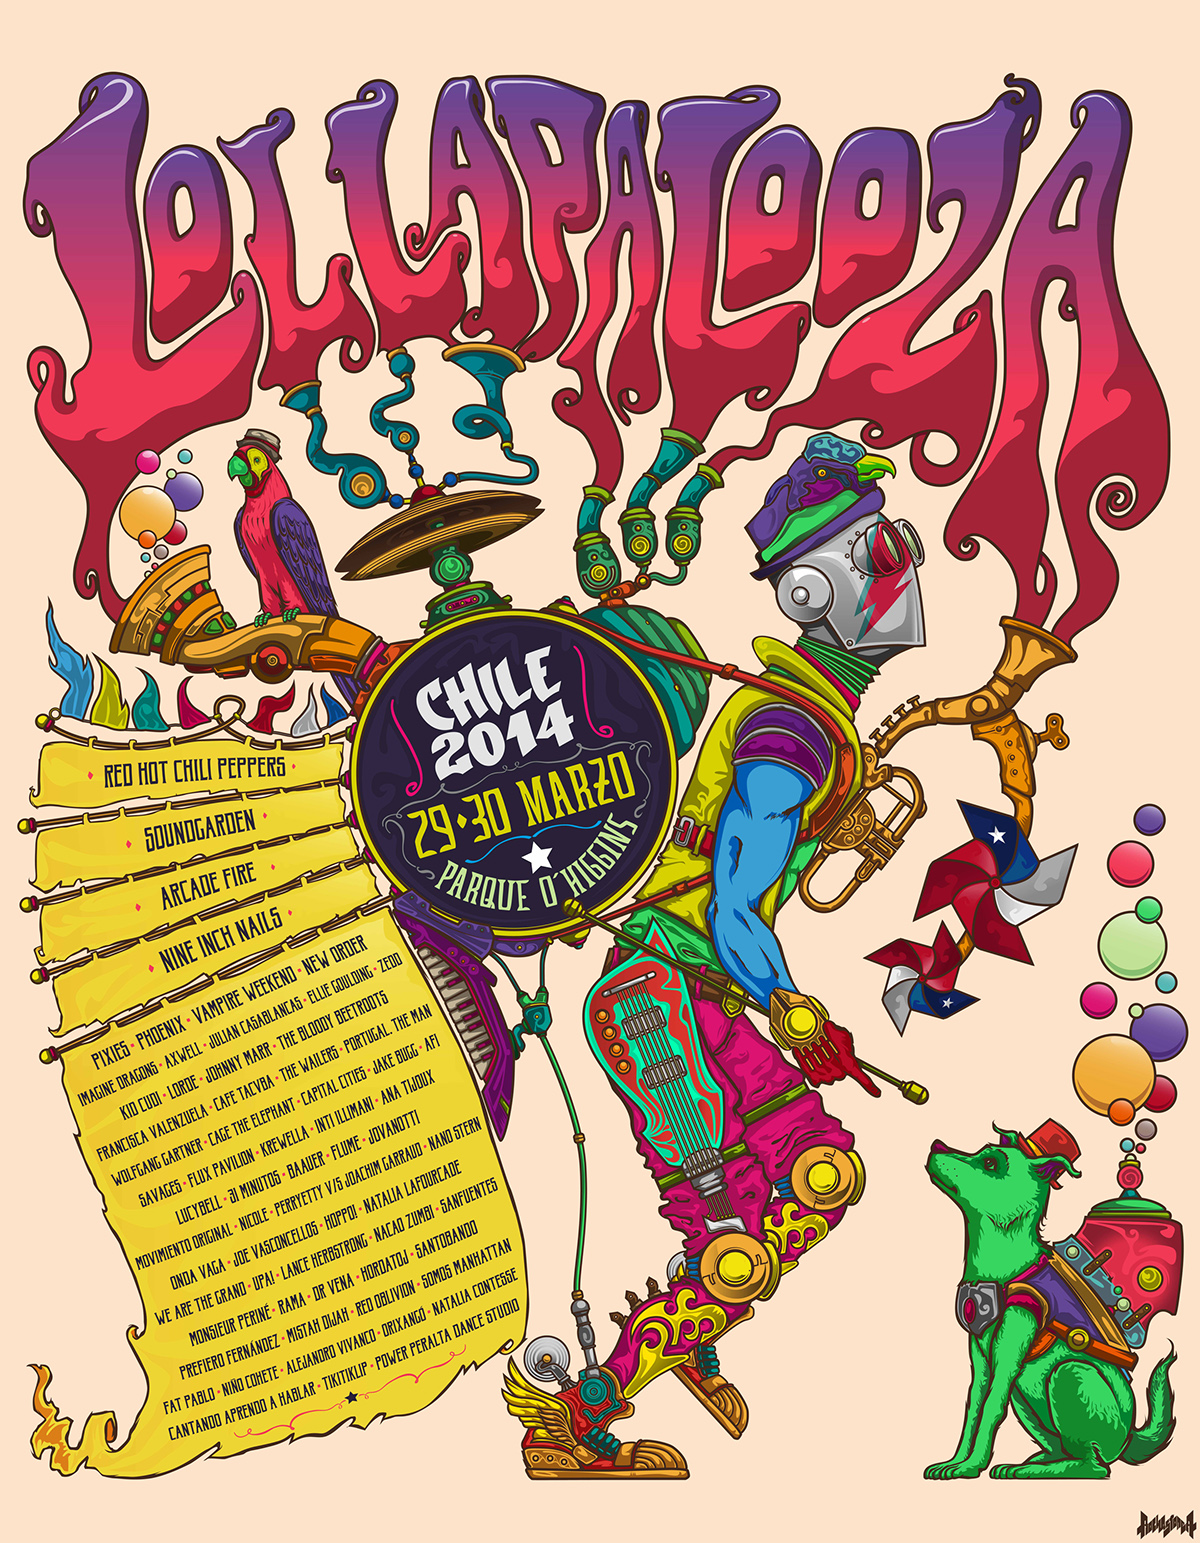 font chile rock rockband GigPoster poster cartel Chinchinero print lollapalooza